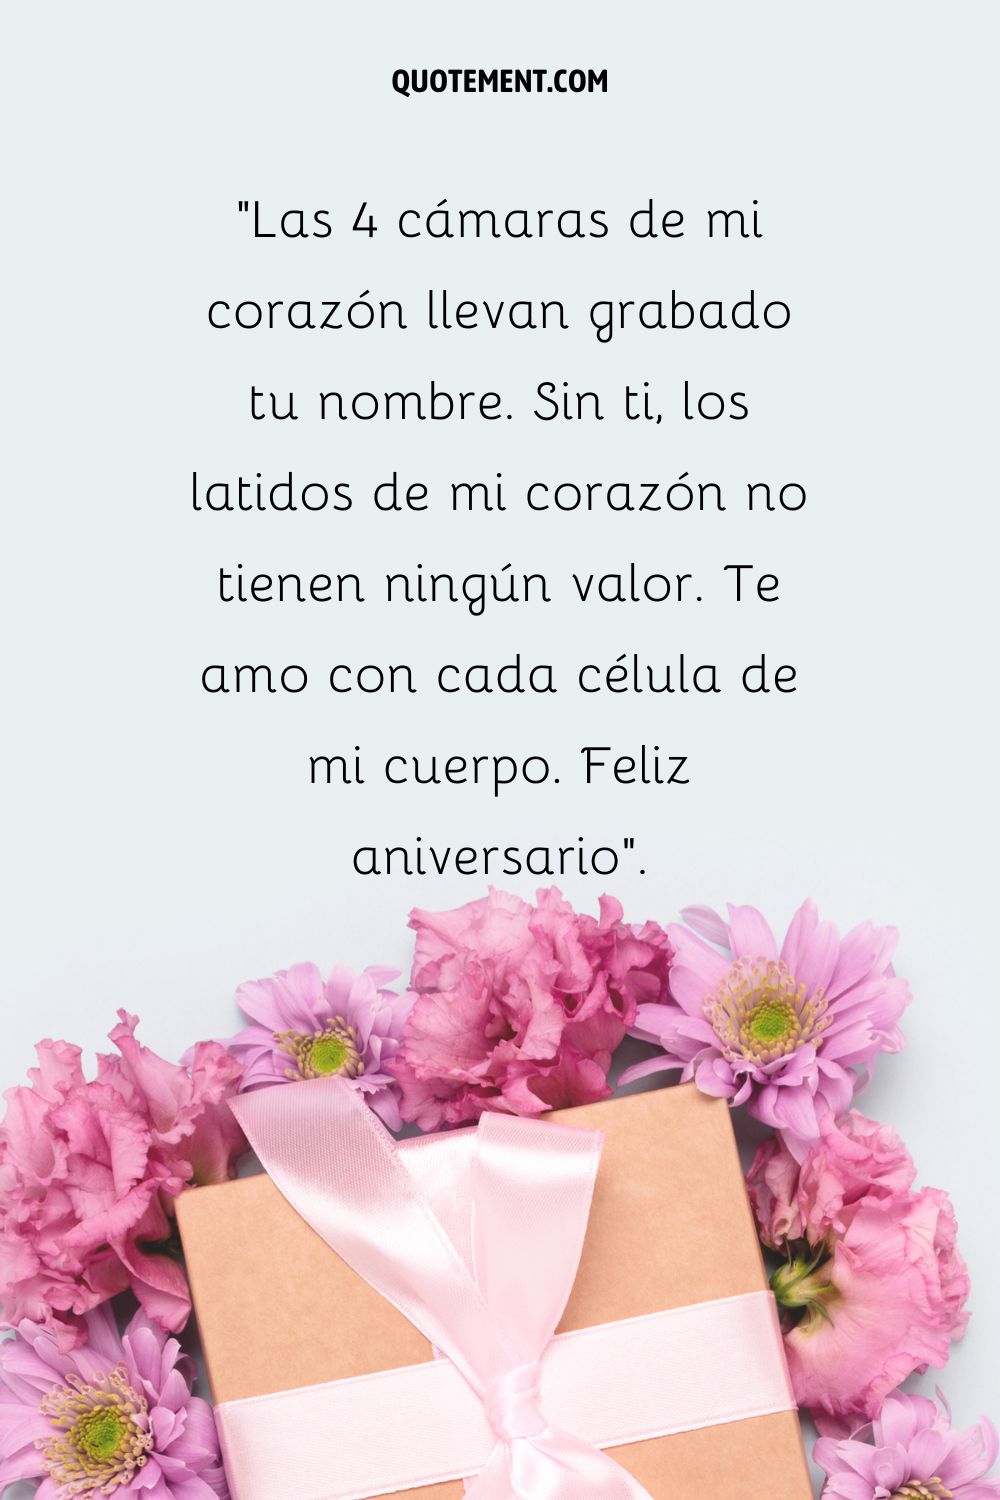 Flores rosas alrededor de una caja de regalo marrón que representa el más bello deseo de 1er aniversario de matrimonio